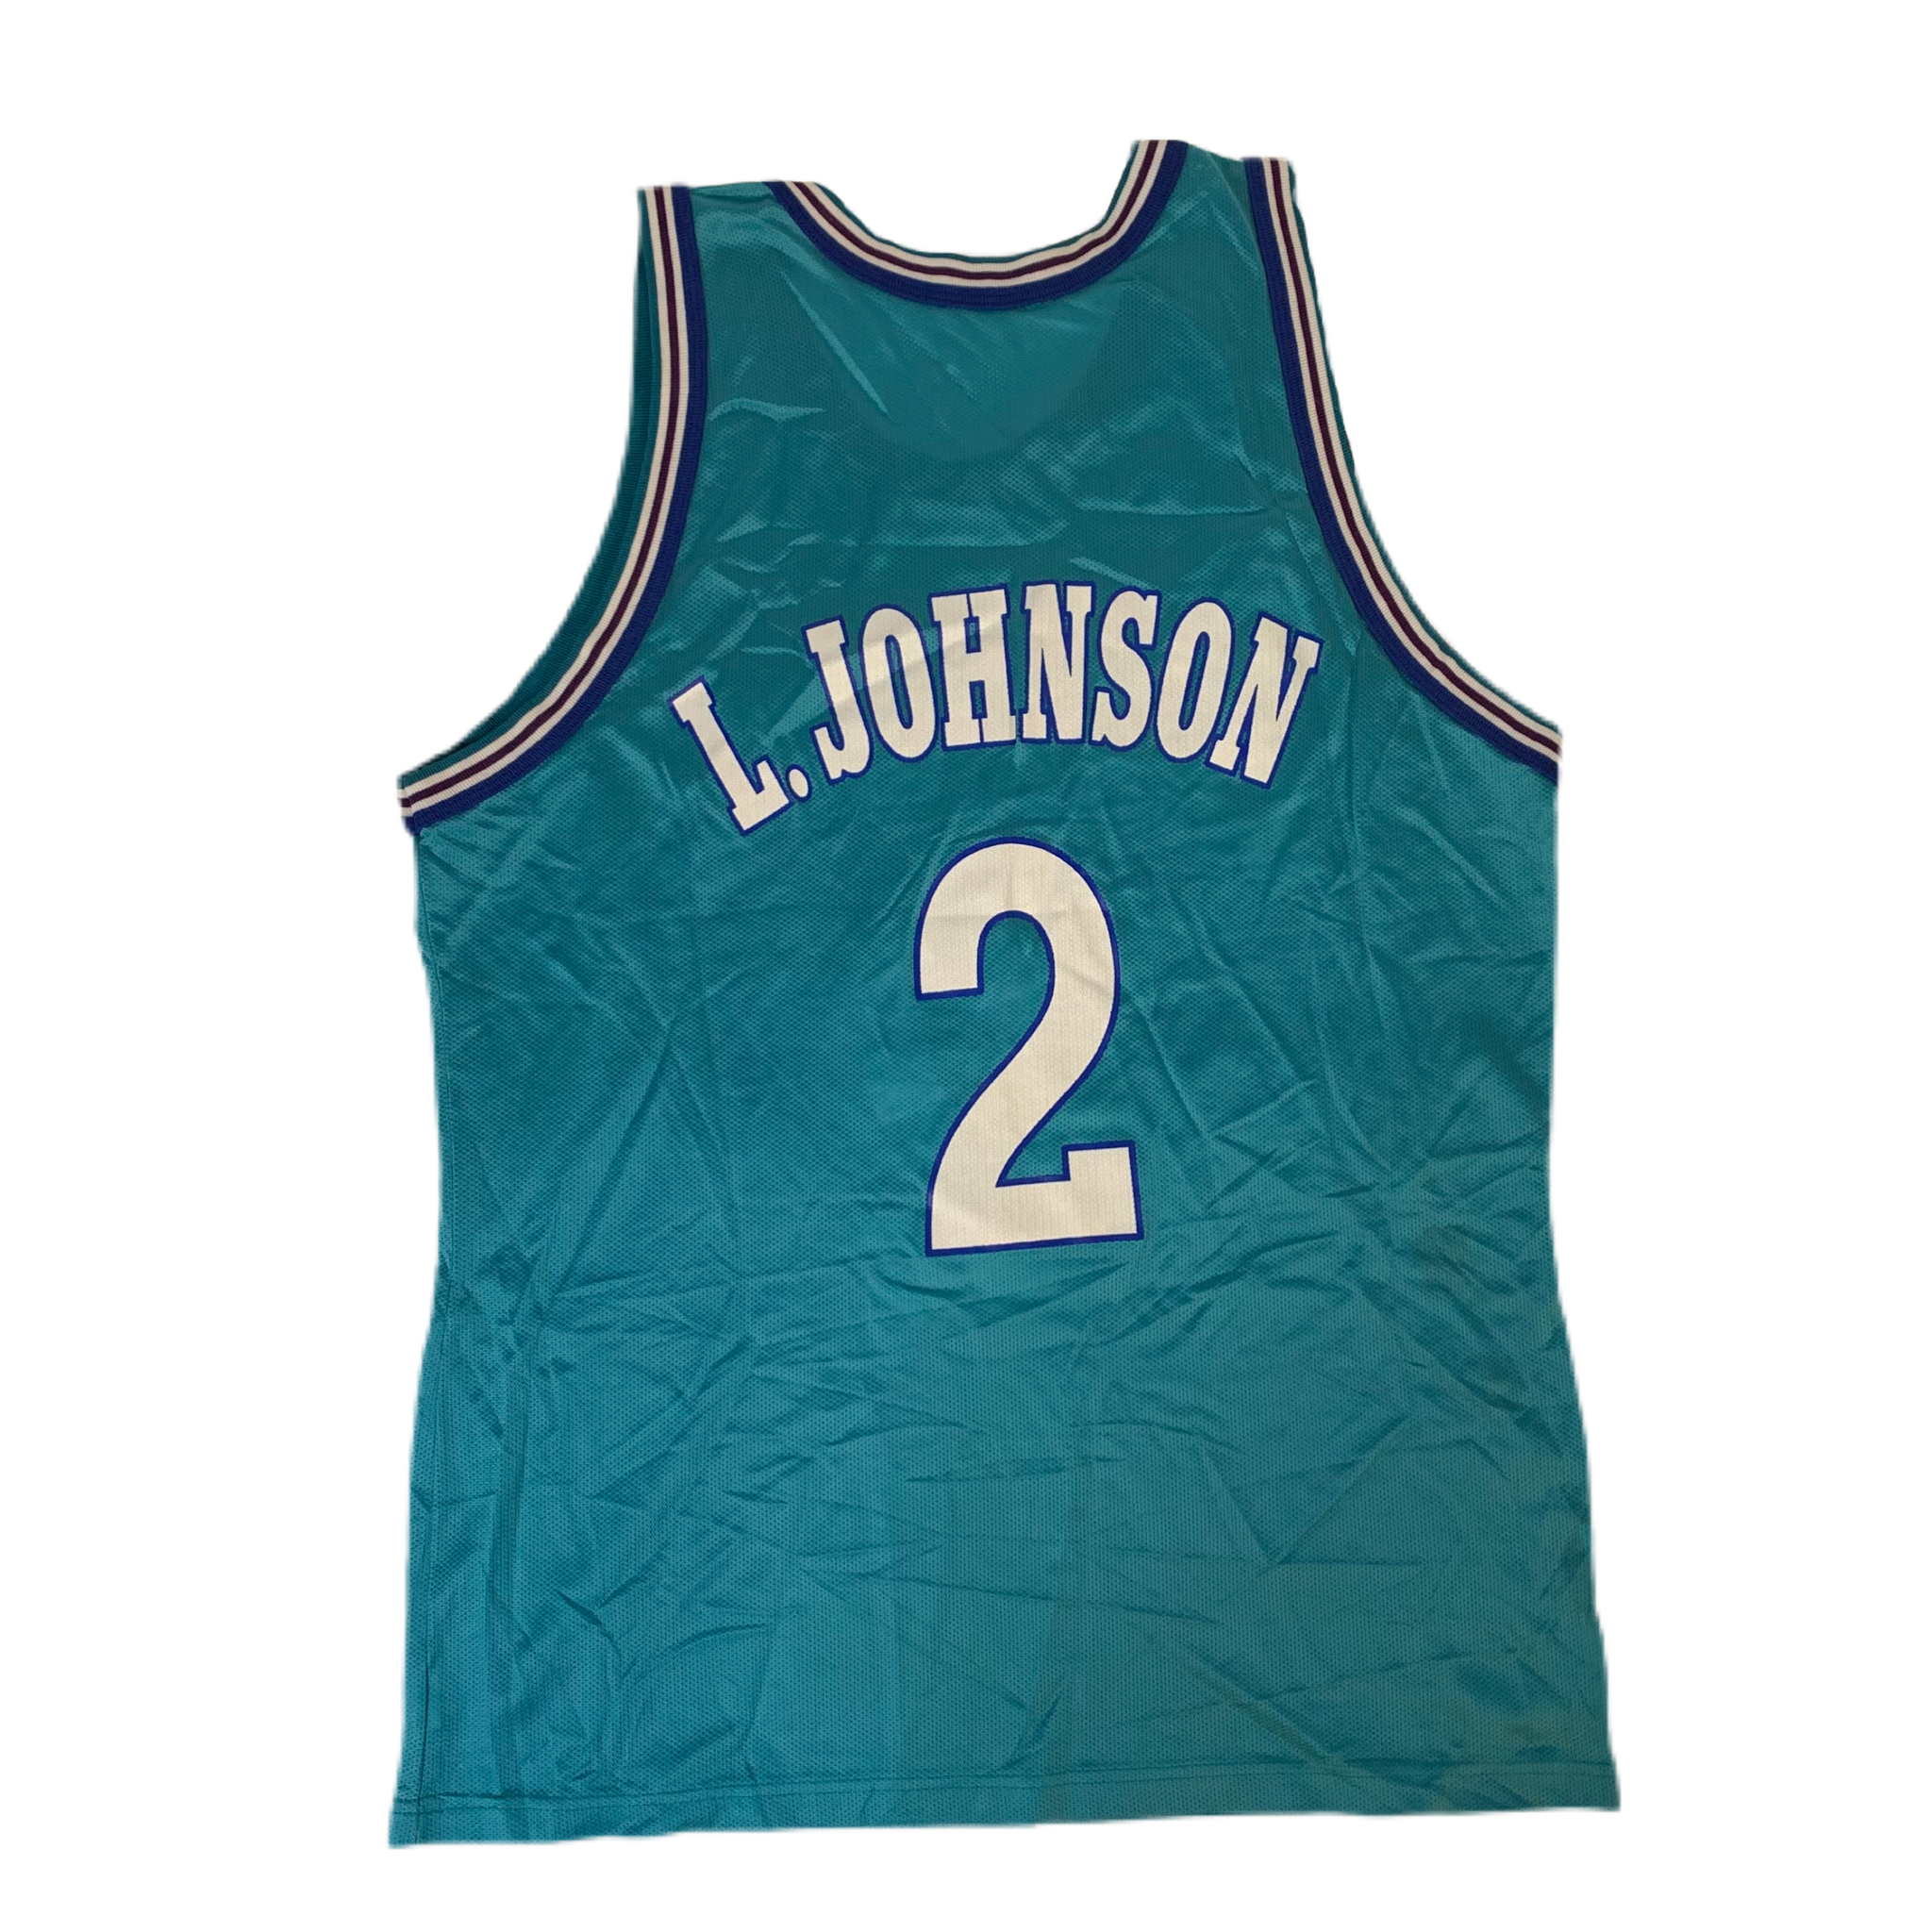 Charlotte Hornets jersey  Basketball jersey, Jersey, Sportswear